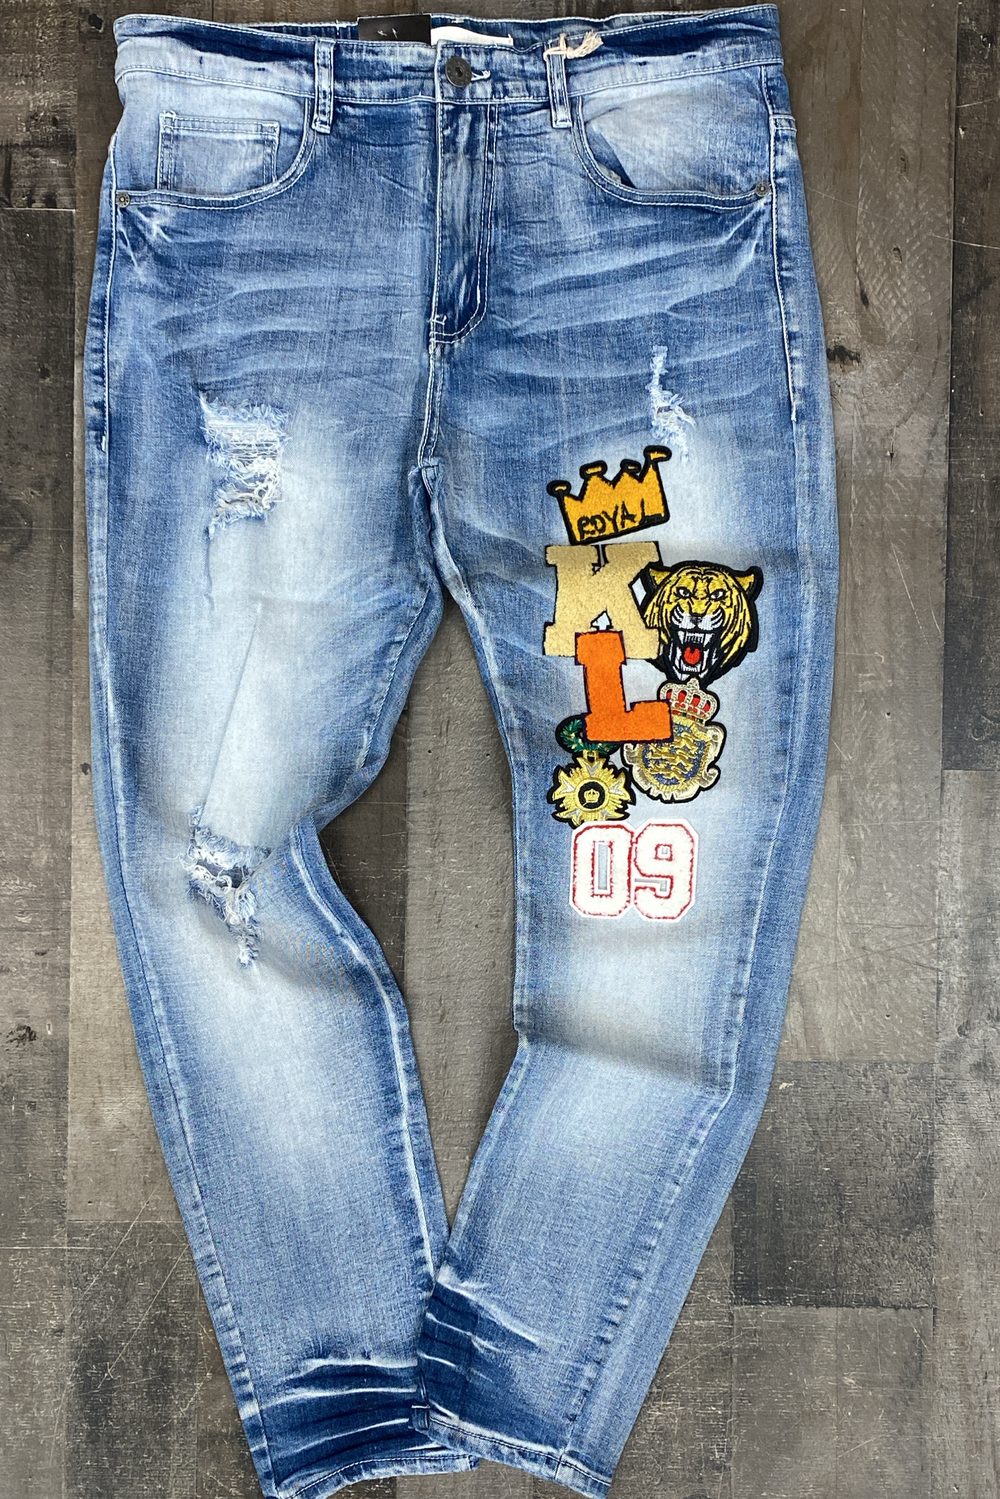 Kloud 9 - royal patch jeans